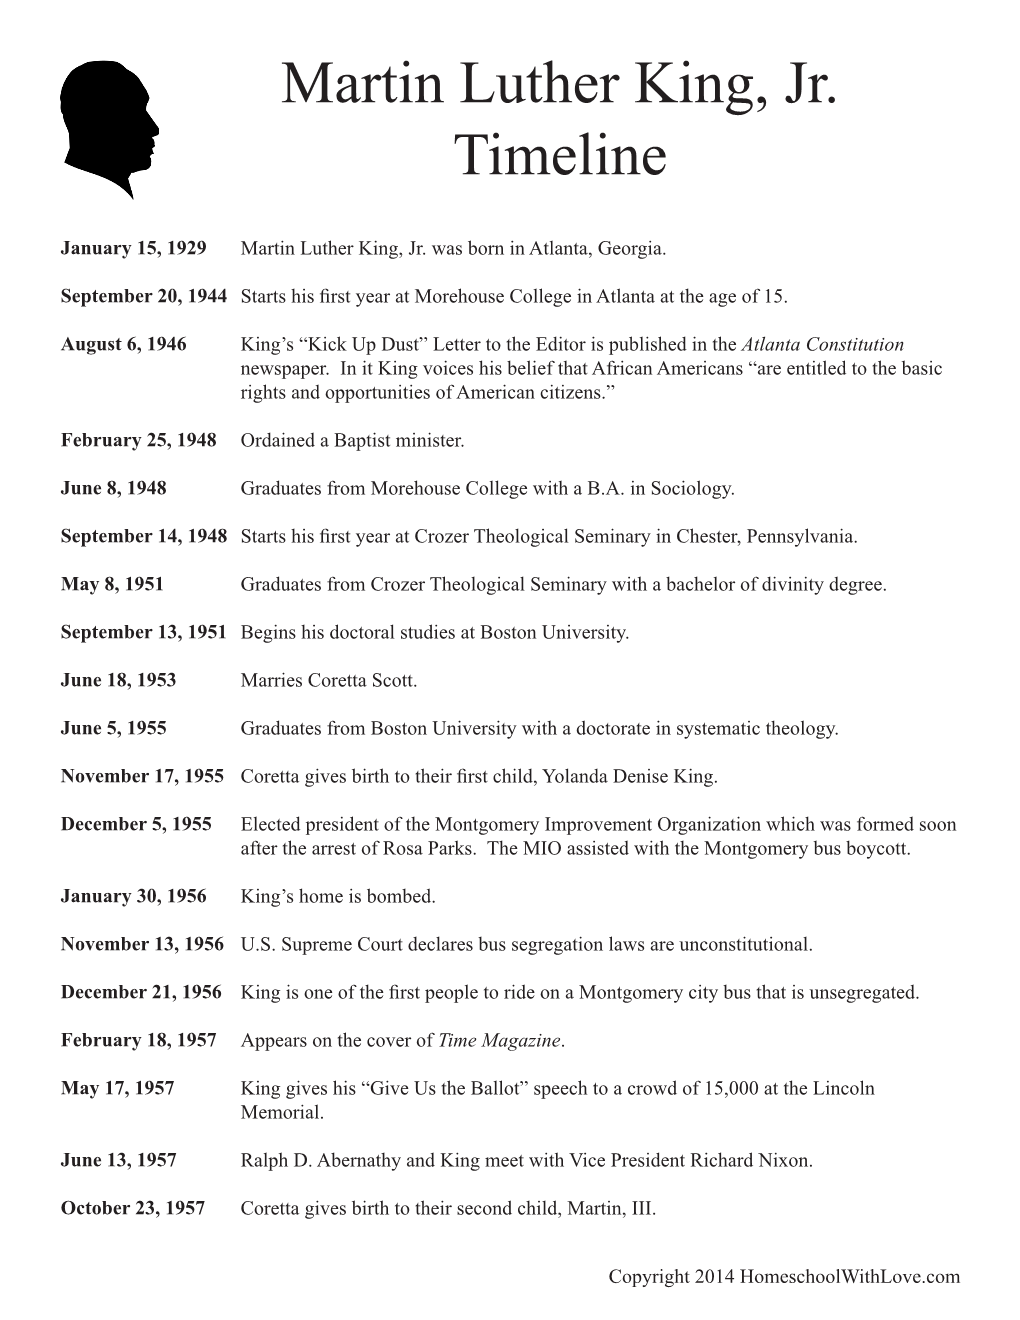 Martin Luther King, Jr. Timeline